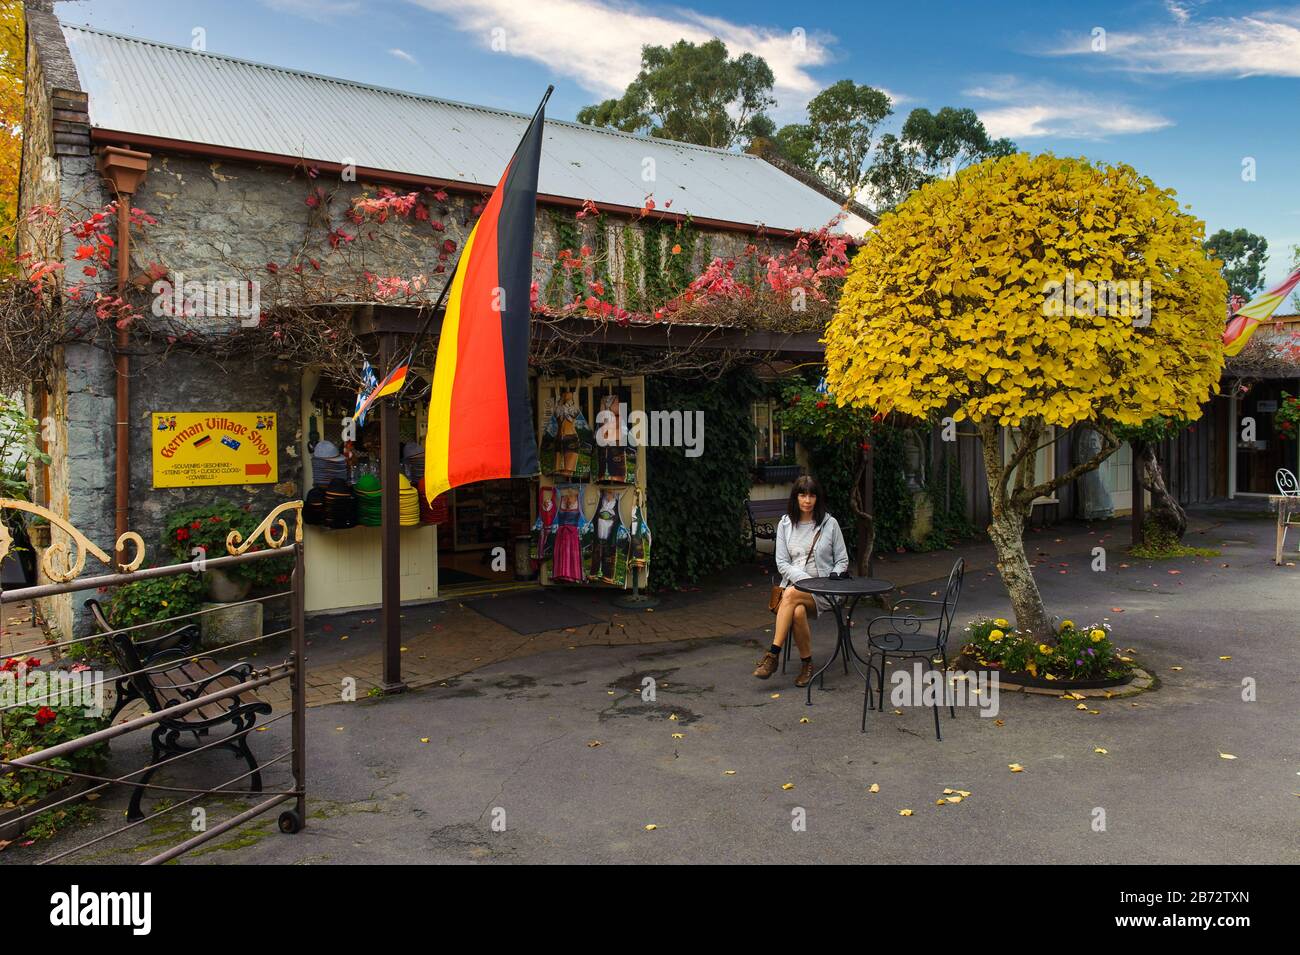 Una sola mujer turística se encuentra frente a una antigua tienda de piedra con una bandera alemana esperando su café rodeado de flora otoñal Foto de stock